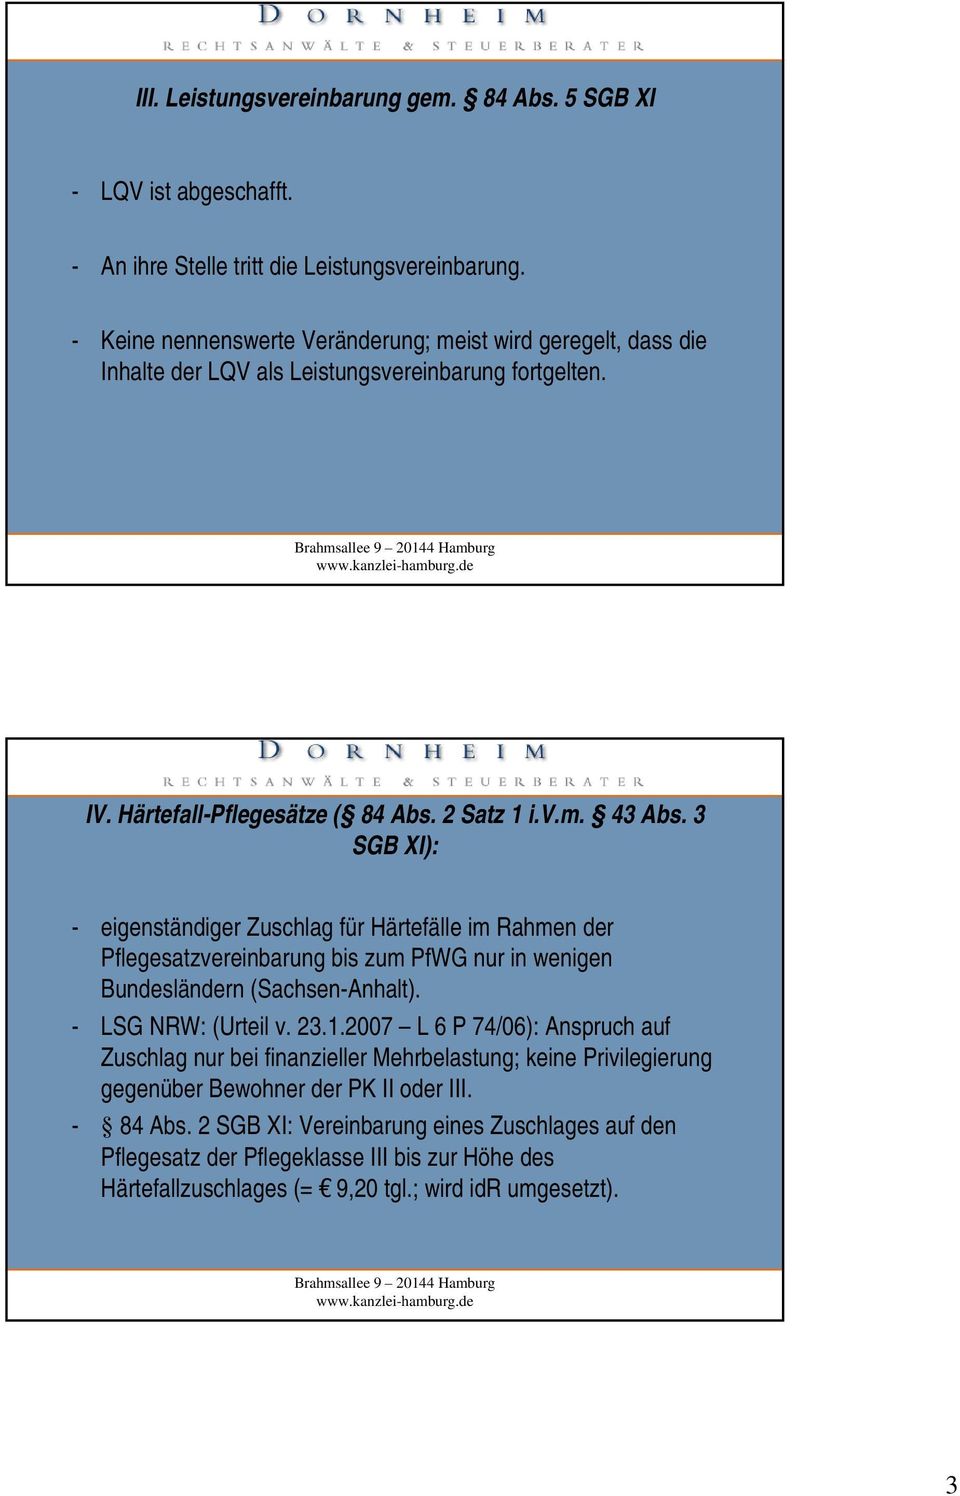 3 SGB XI): - eigenständiger Zuschlag für Härtefälle im Rahmen der Pflegesatzvereinbarung bis zum PfWG nur in wenigen Bundesländern (Sachsen-Anhalt). - LSG NRW: (Urteil v. 23.1.